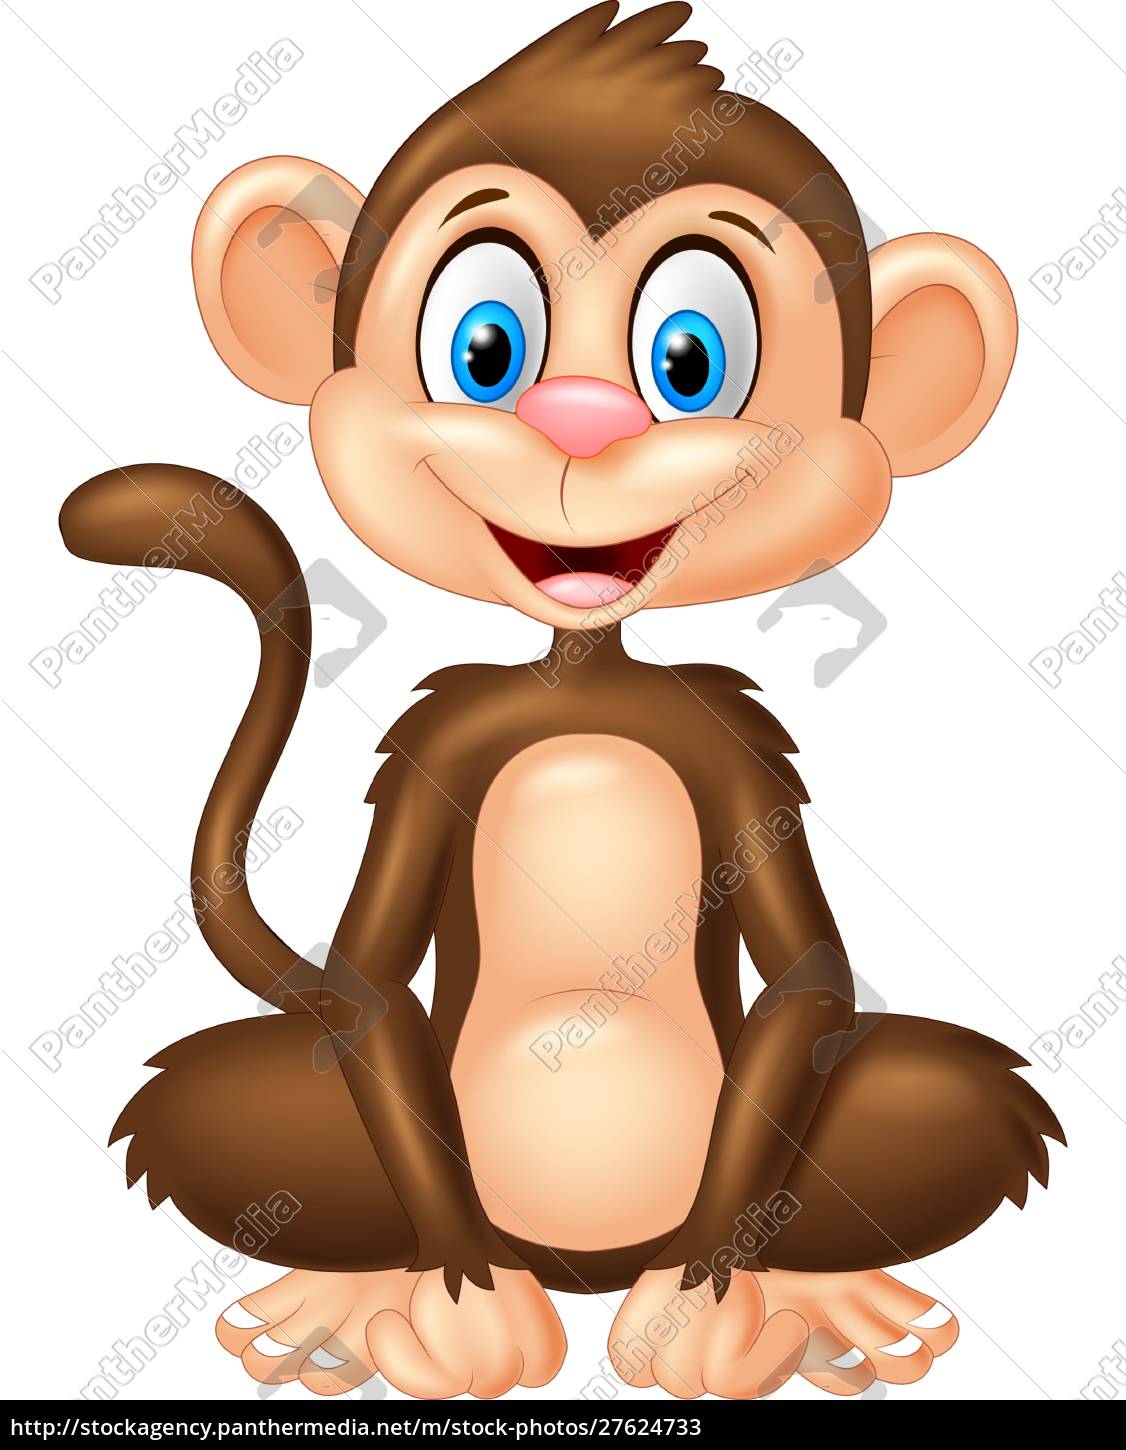 Macaco de desenho animado ou chimpanzé fotomural • fotomurais sessão,  sentar-se, sorridente